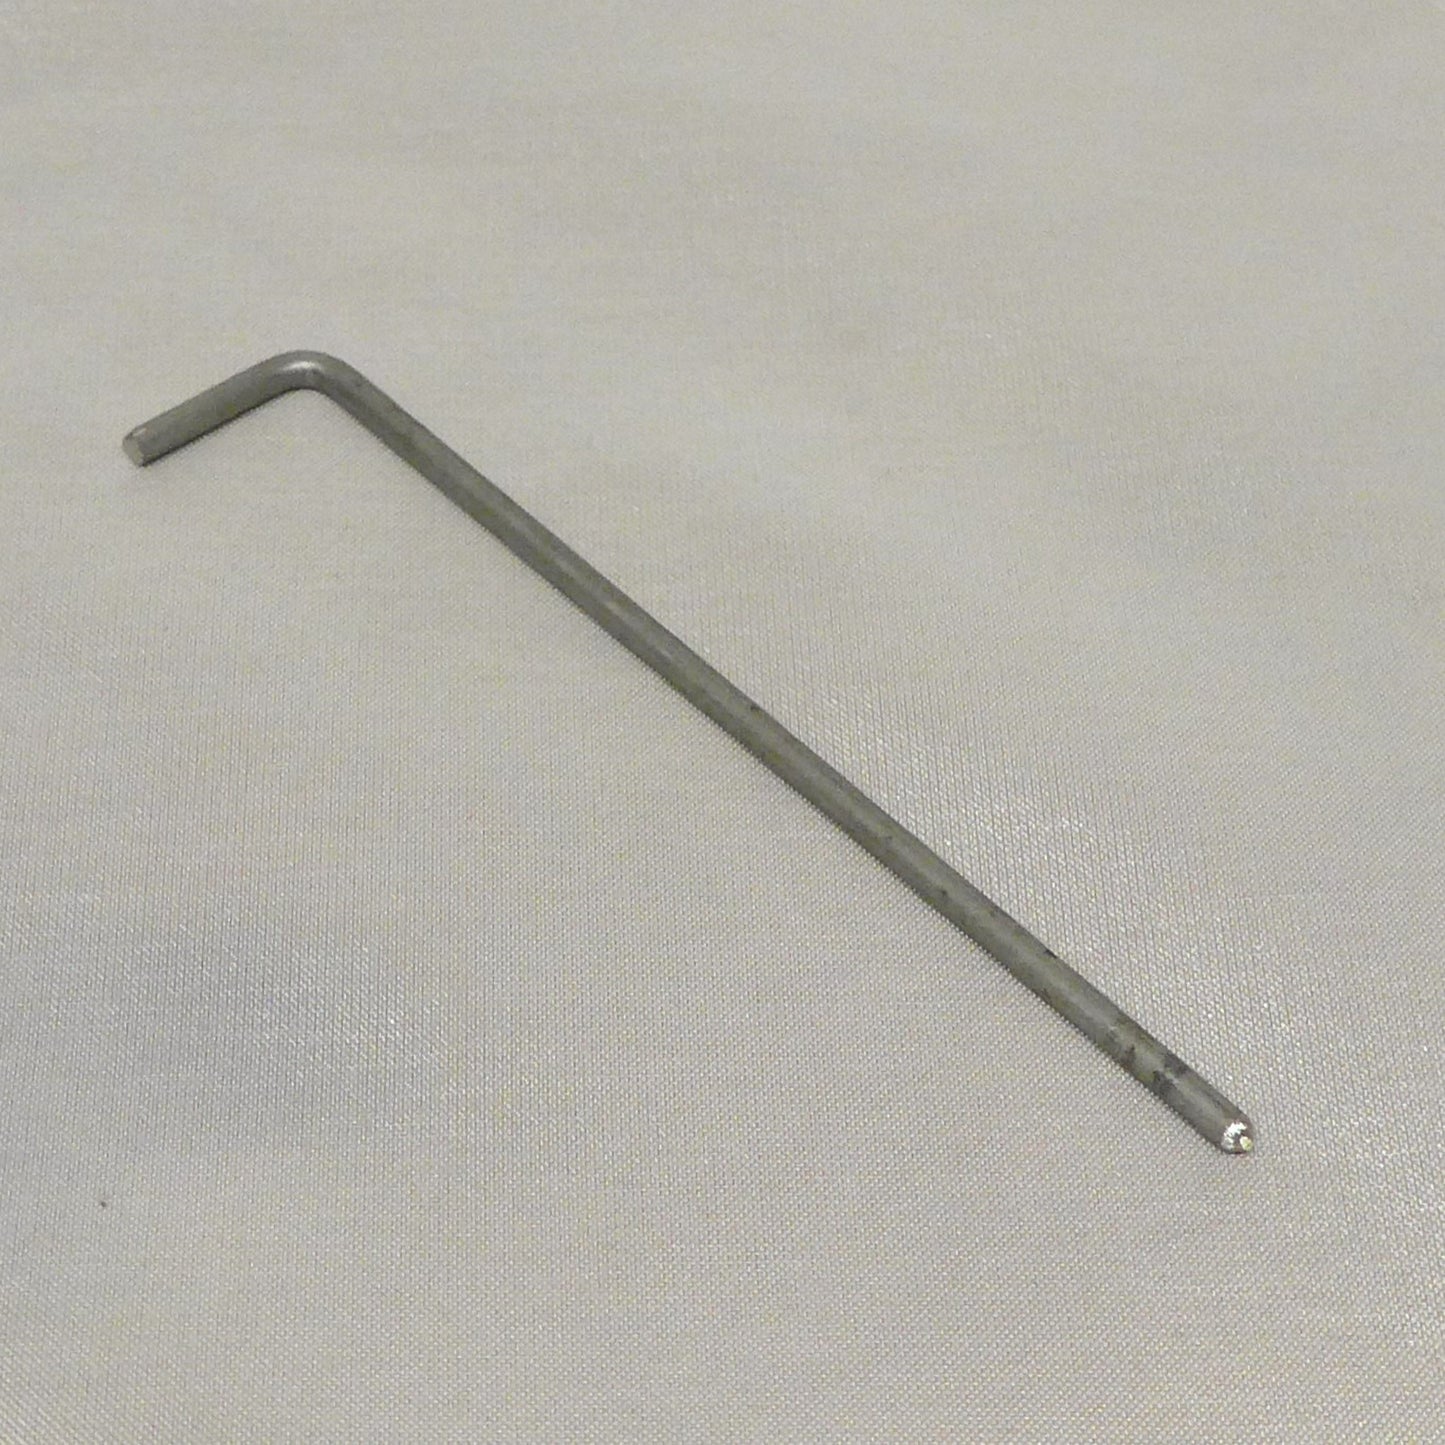 Stainless Hinge Pin